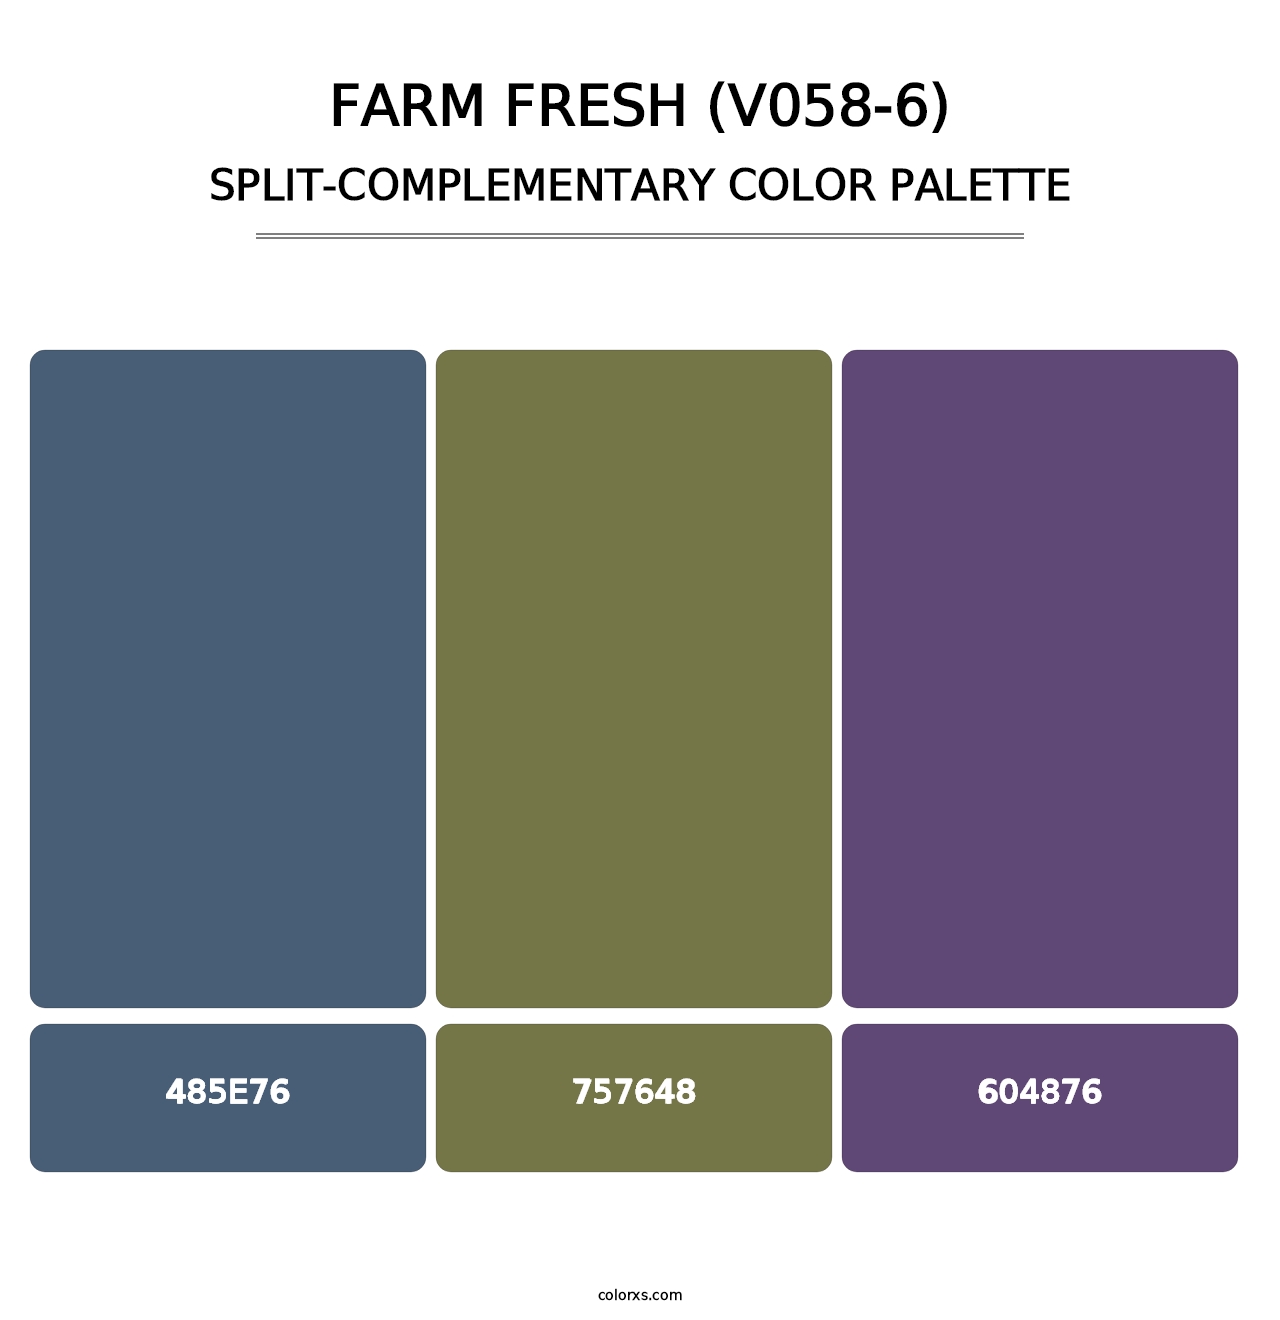 Farm Fresh (V058-6) - Split-Complementary Color Palette